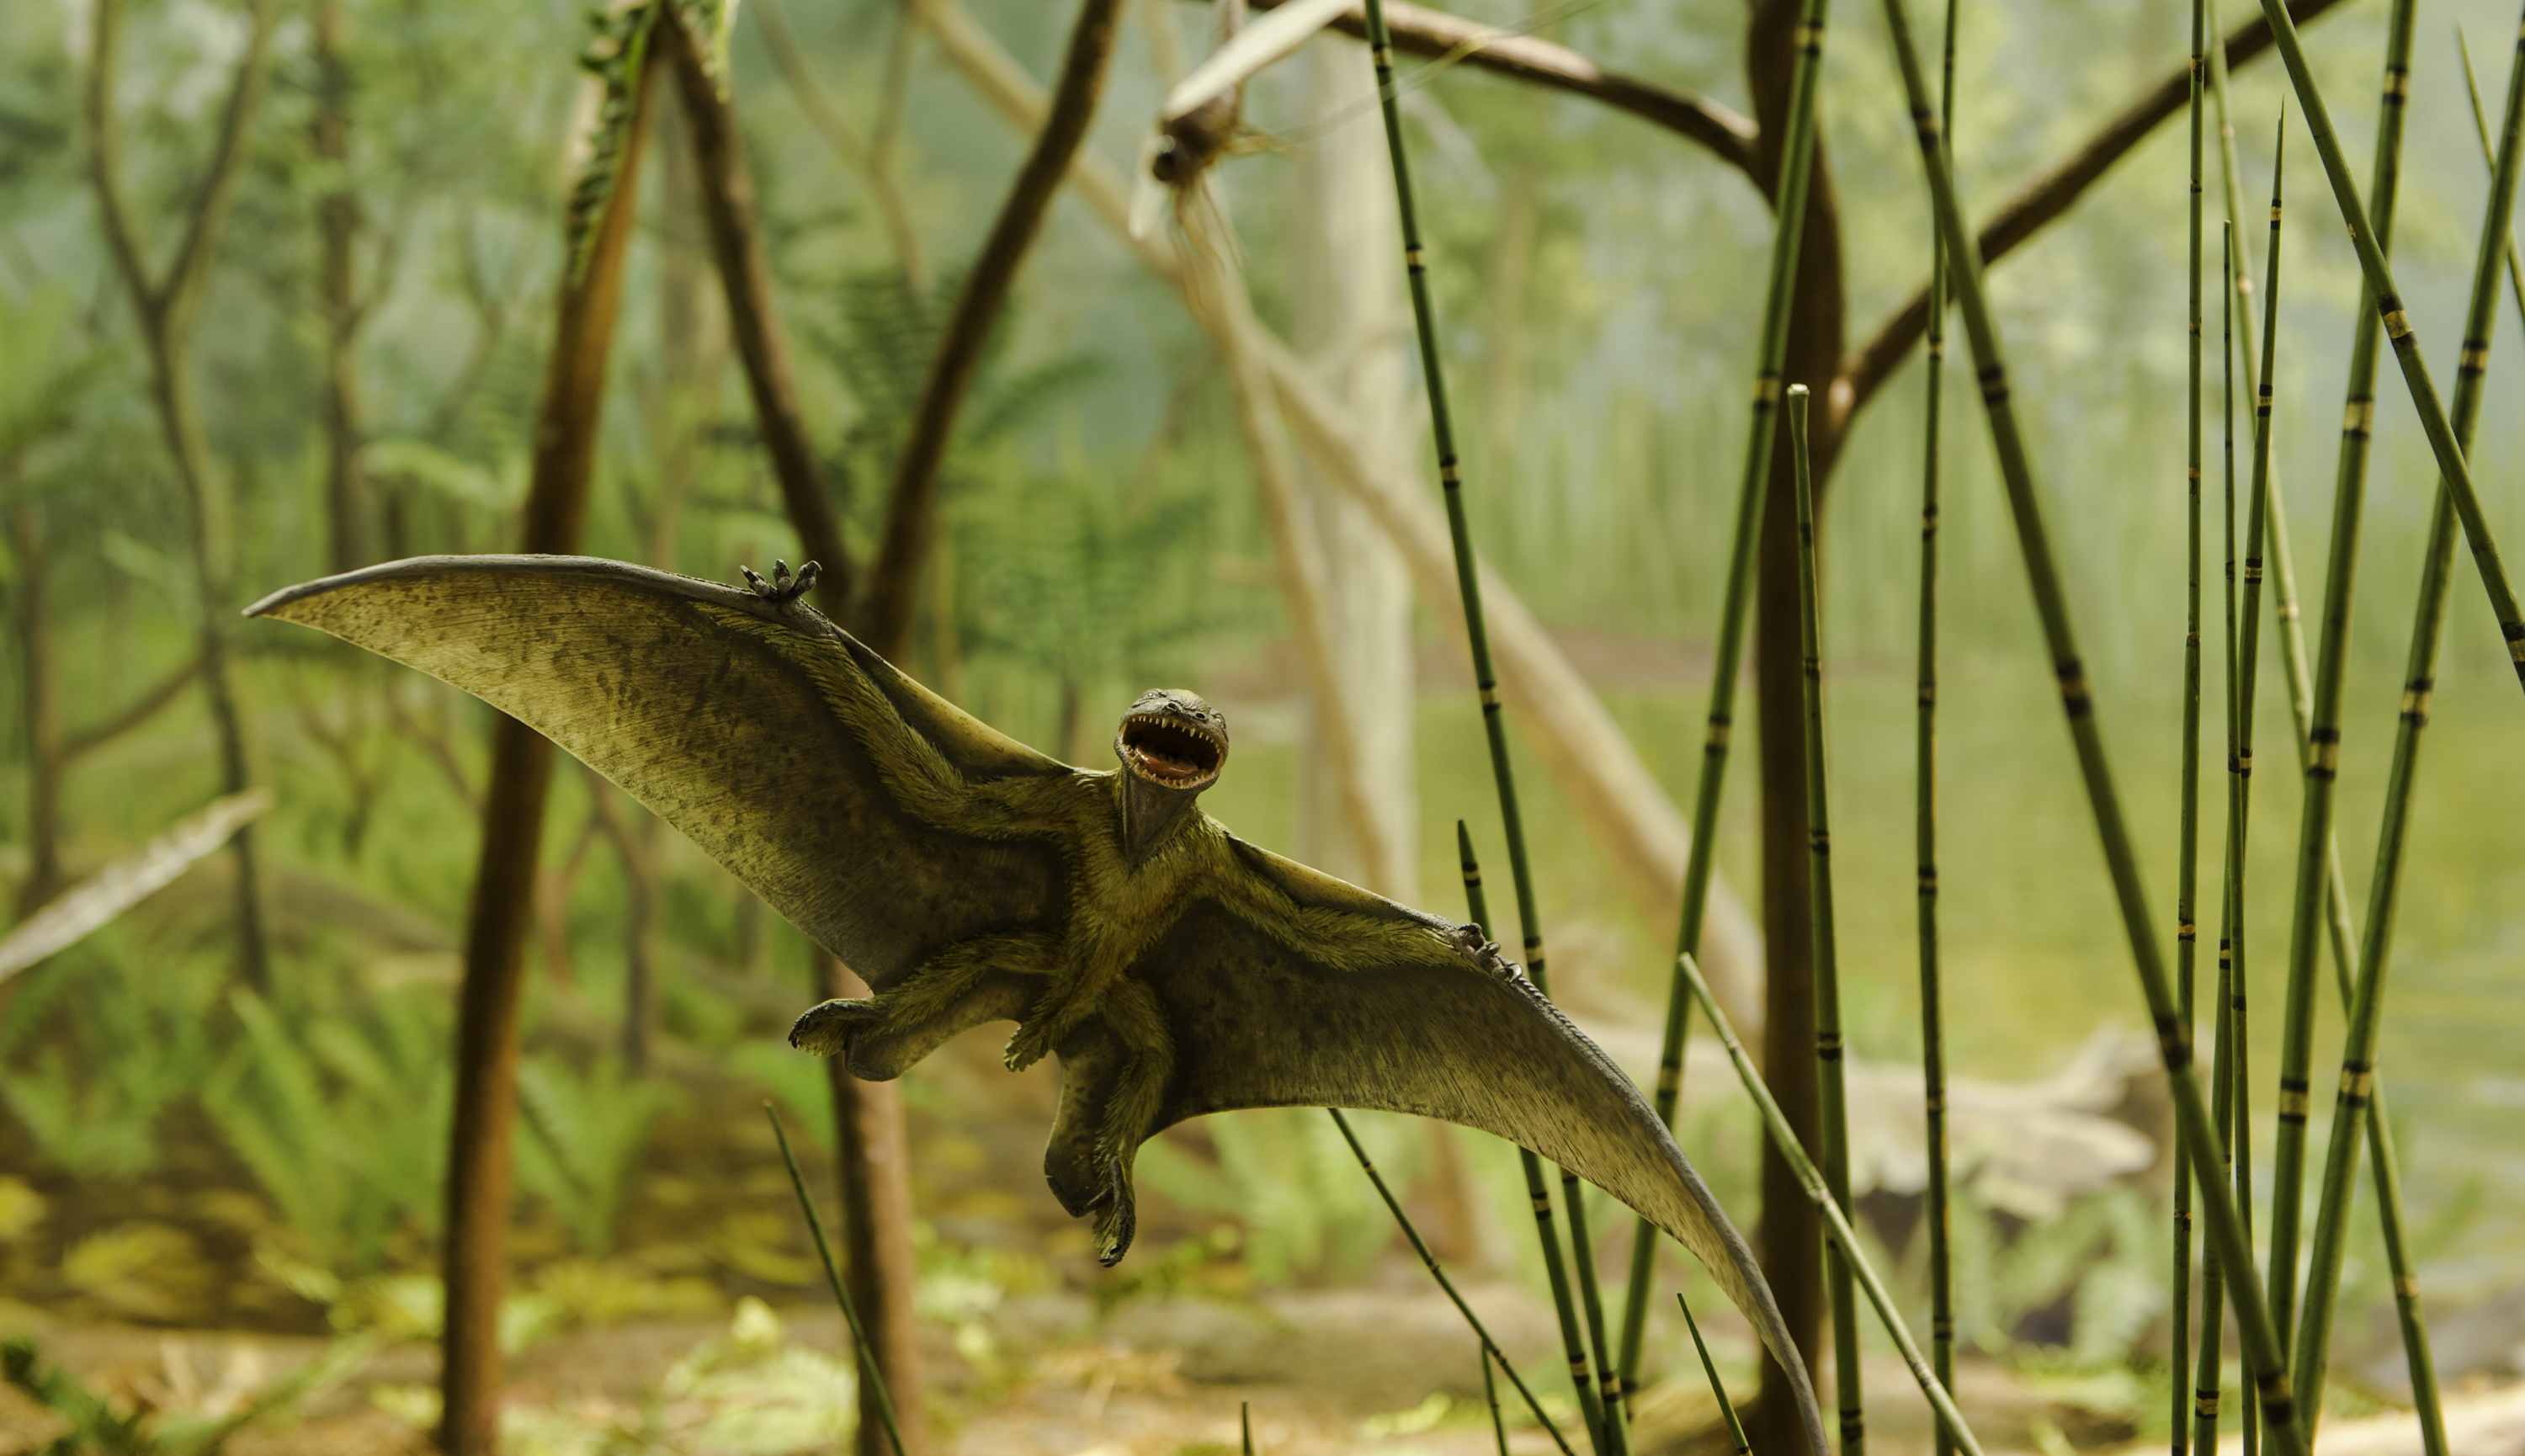 新加坡艺术科学博物馆 - 《恐龙： 黎明至灭绝》展览